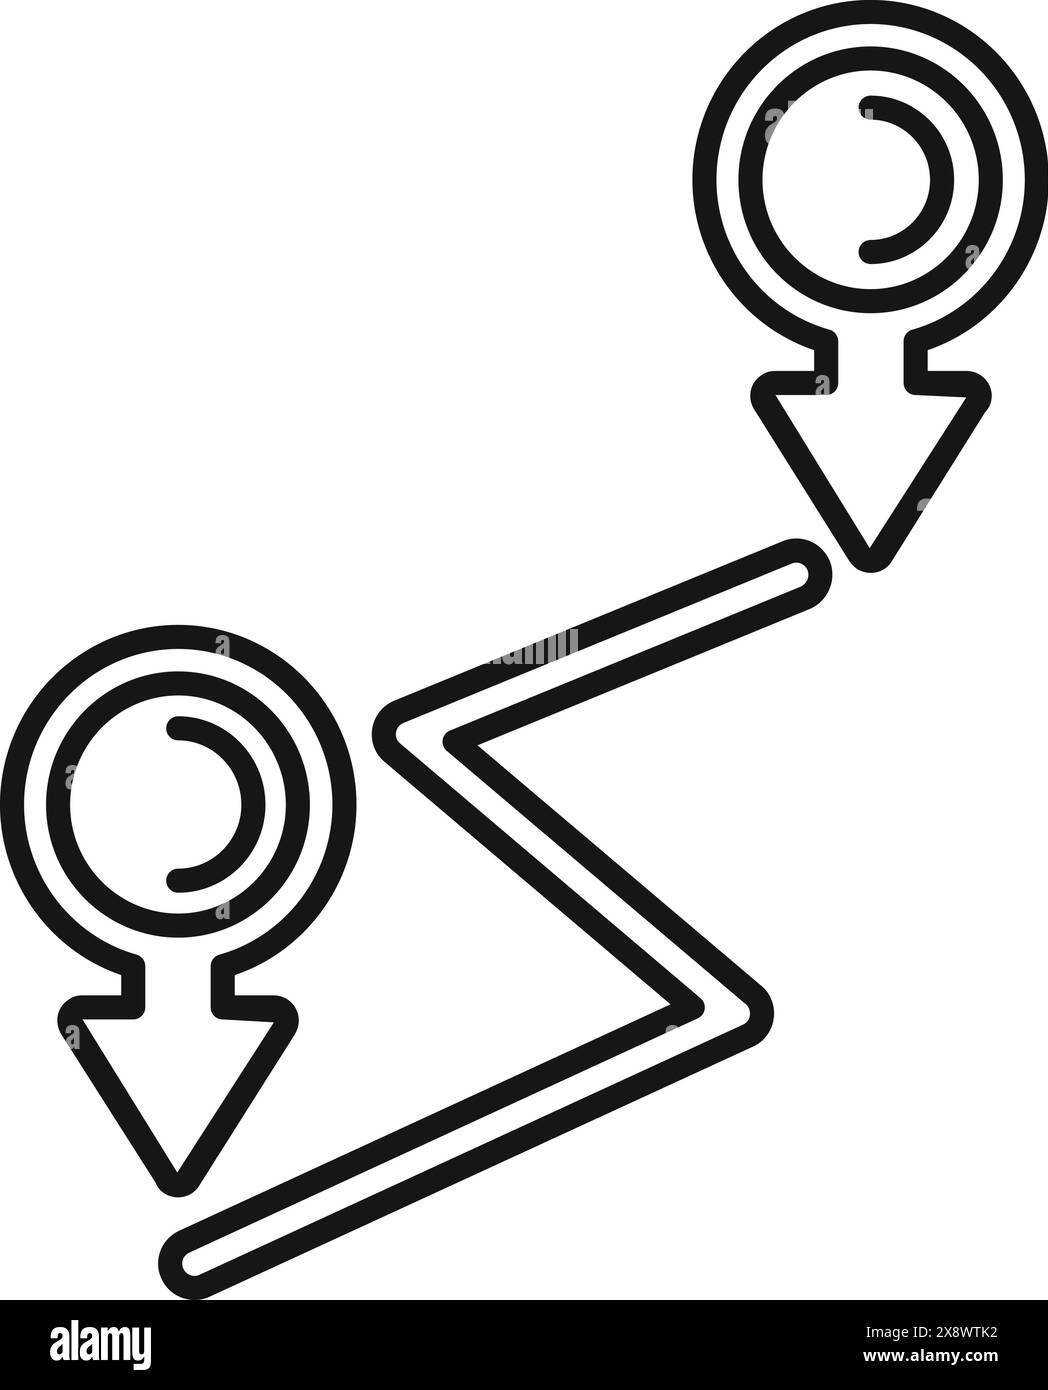 Icône stylisée en noir et blanc représentant une carte d'itinéraire avec deux épingles d'emplacement Illustration de Vecteur